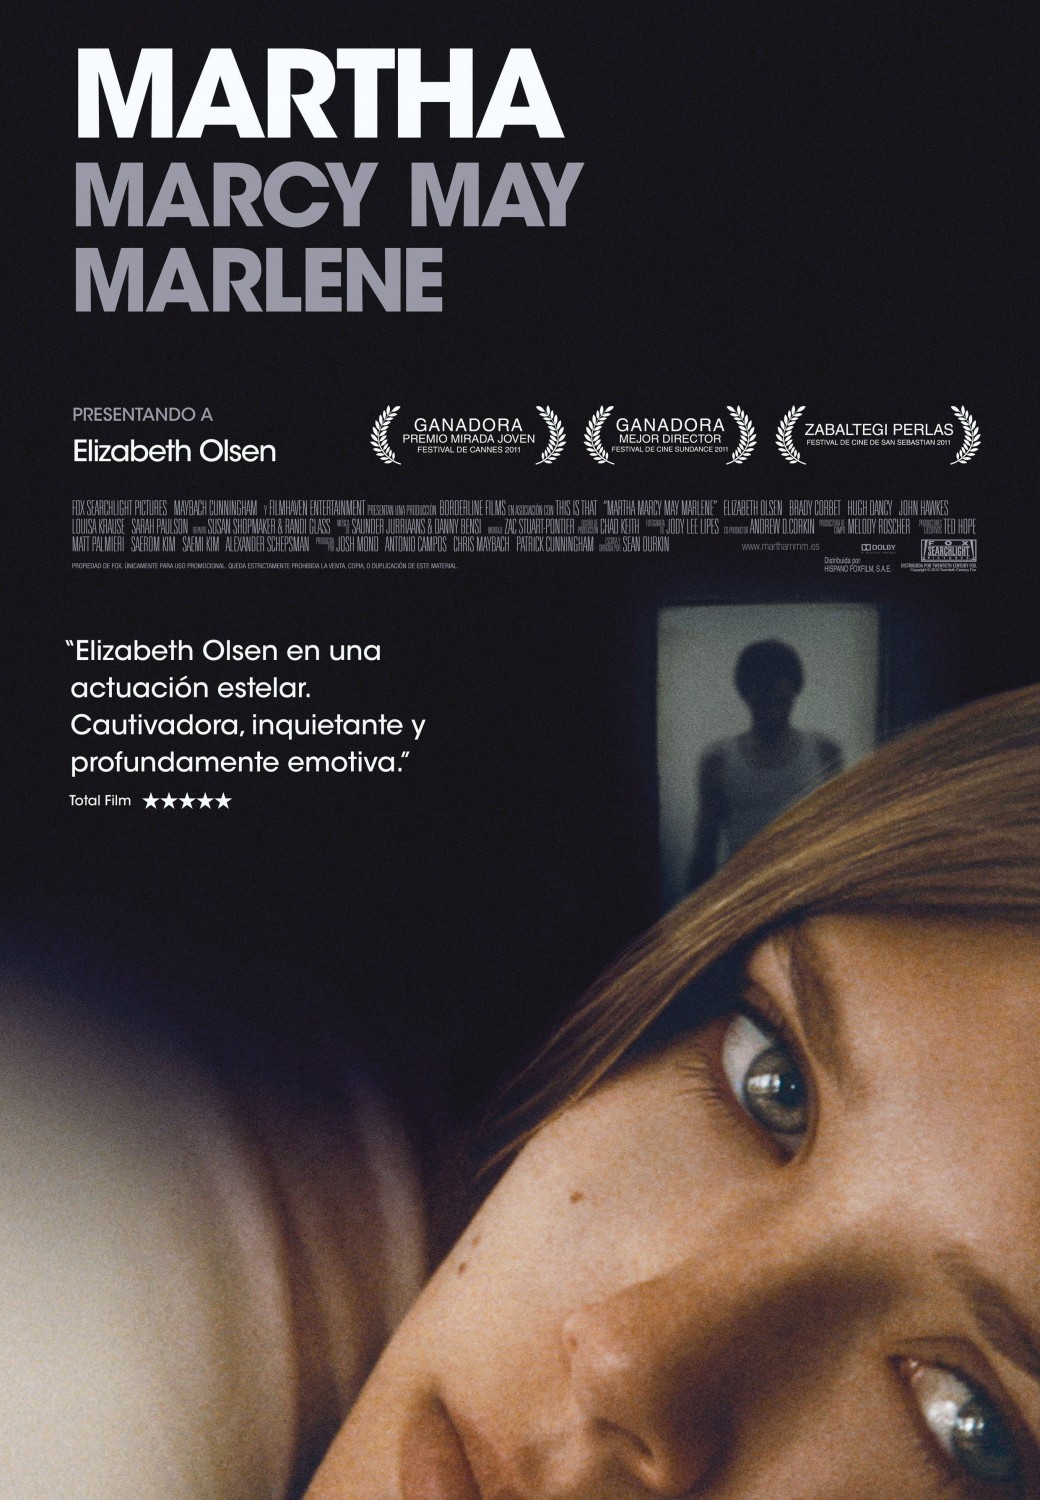 Elizabeth Olsen in Martha Marcy May Marlene